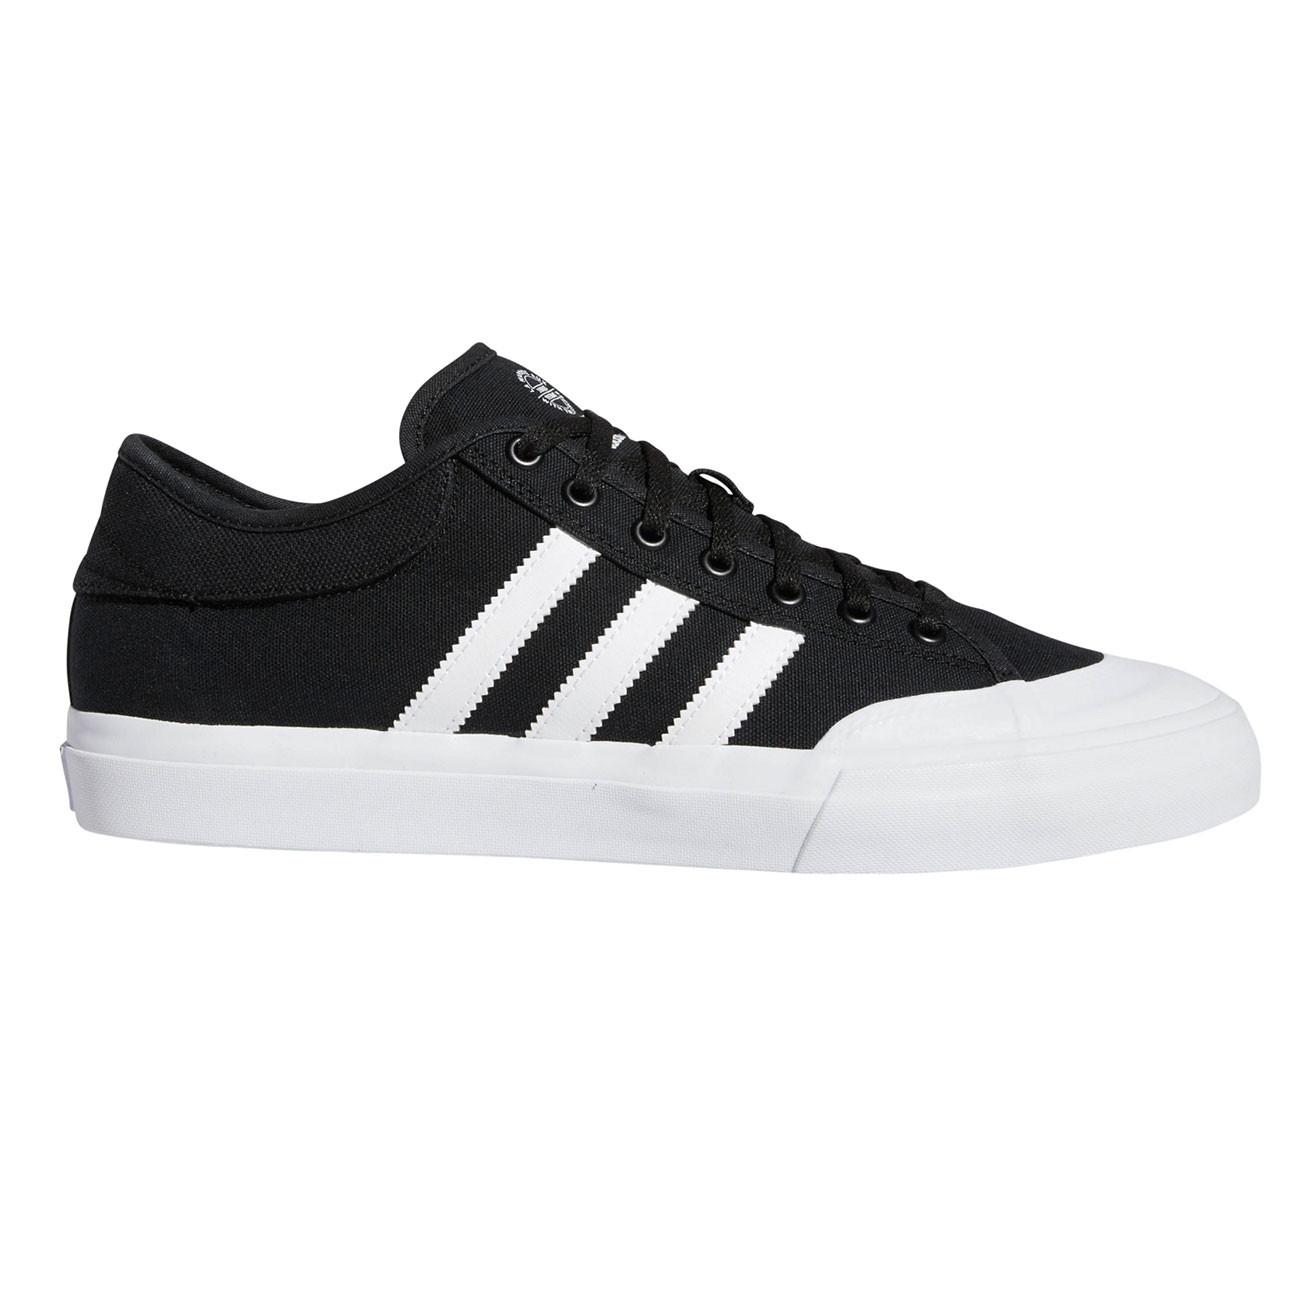 Skate shoes Adidas Matchcourt core black/ftwr white/core black ...